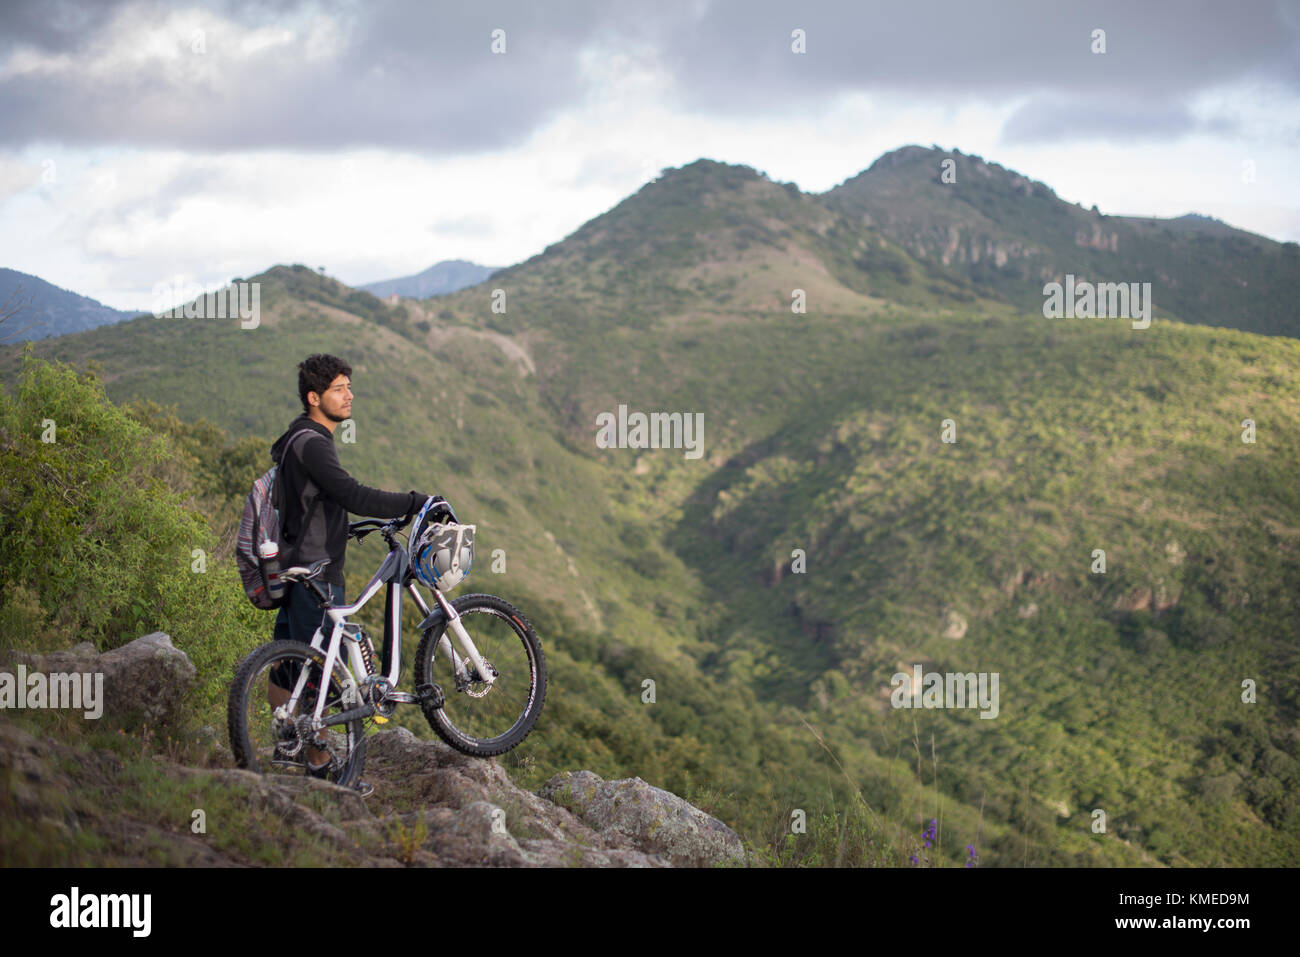 Ein Mountainbiker mit seinem Fahrrad stears auf die Landschaft während einer Reise an Joya La Barreta Bereich in Queretaro, Mexiko. Stockfoto